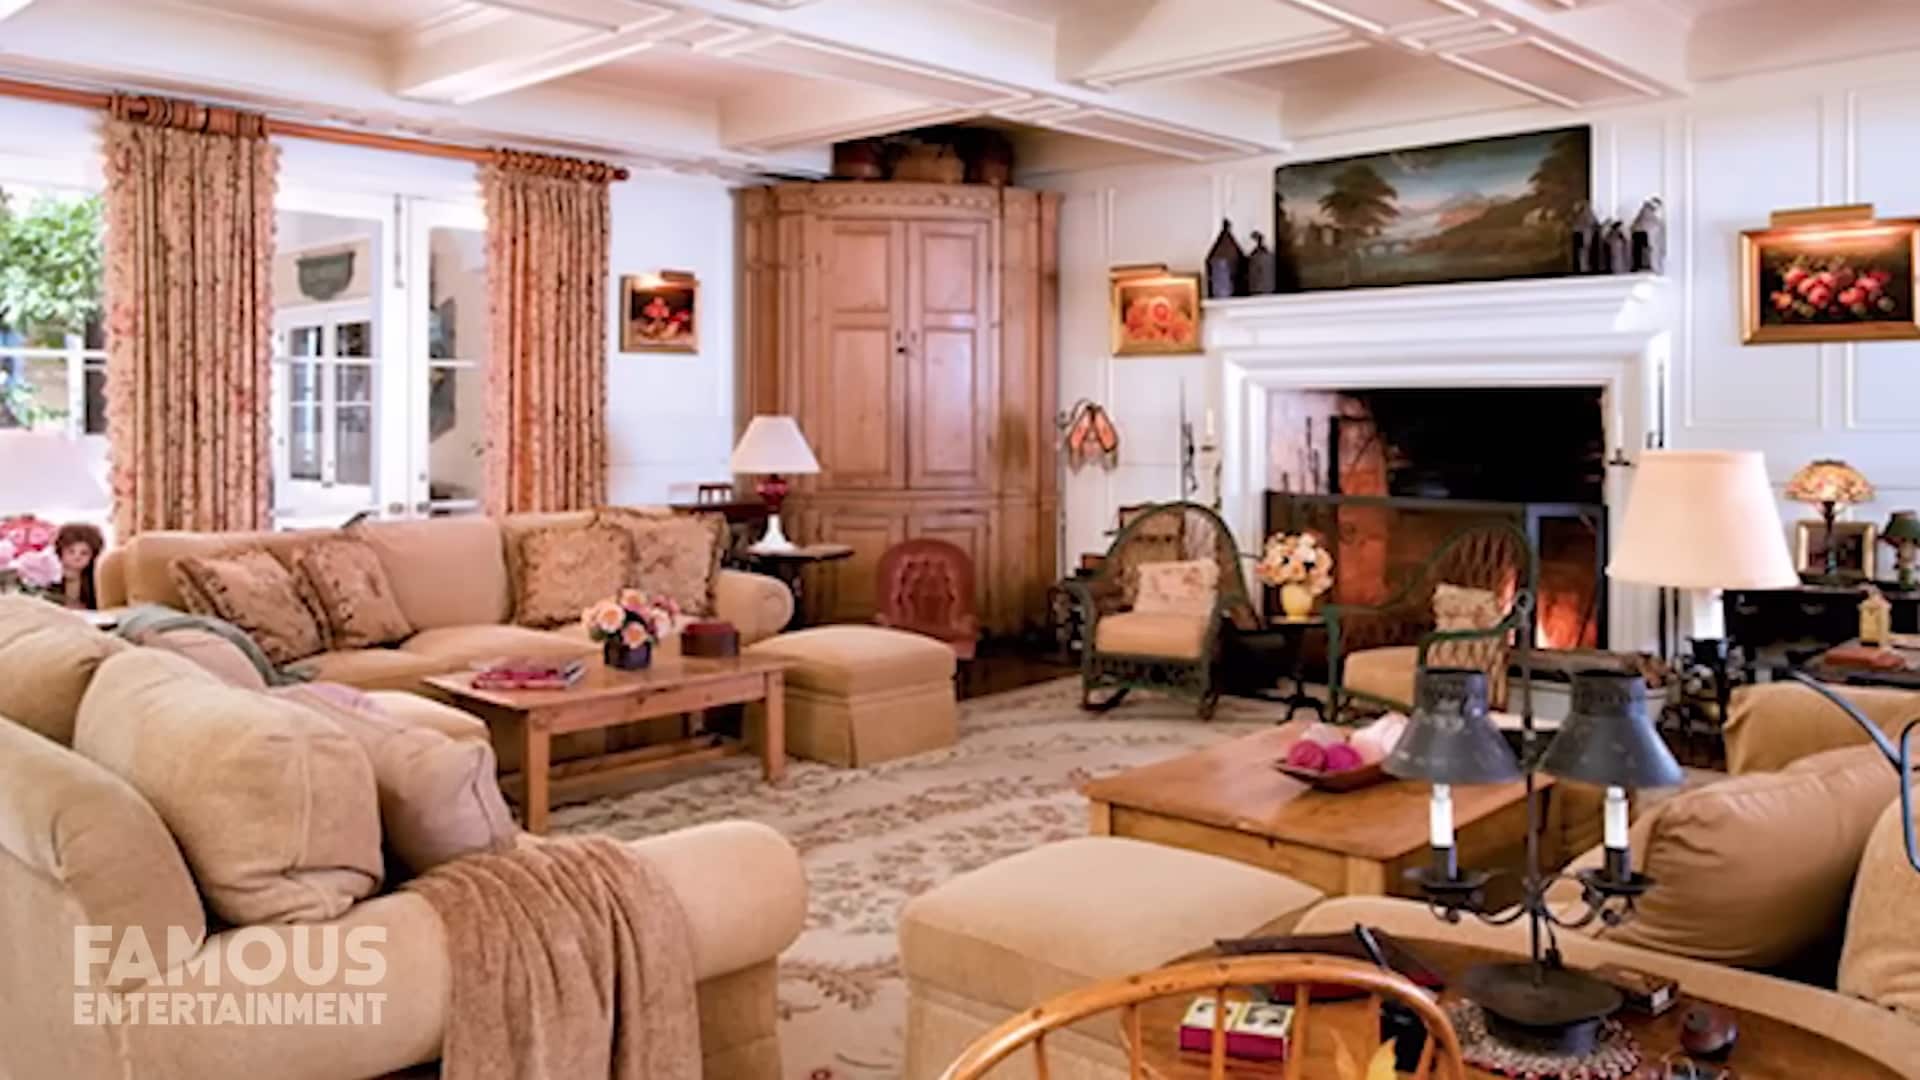 Barbra Streisand’s living room